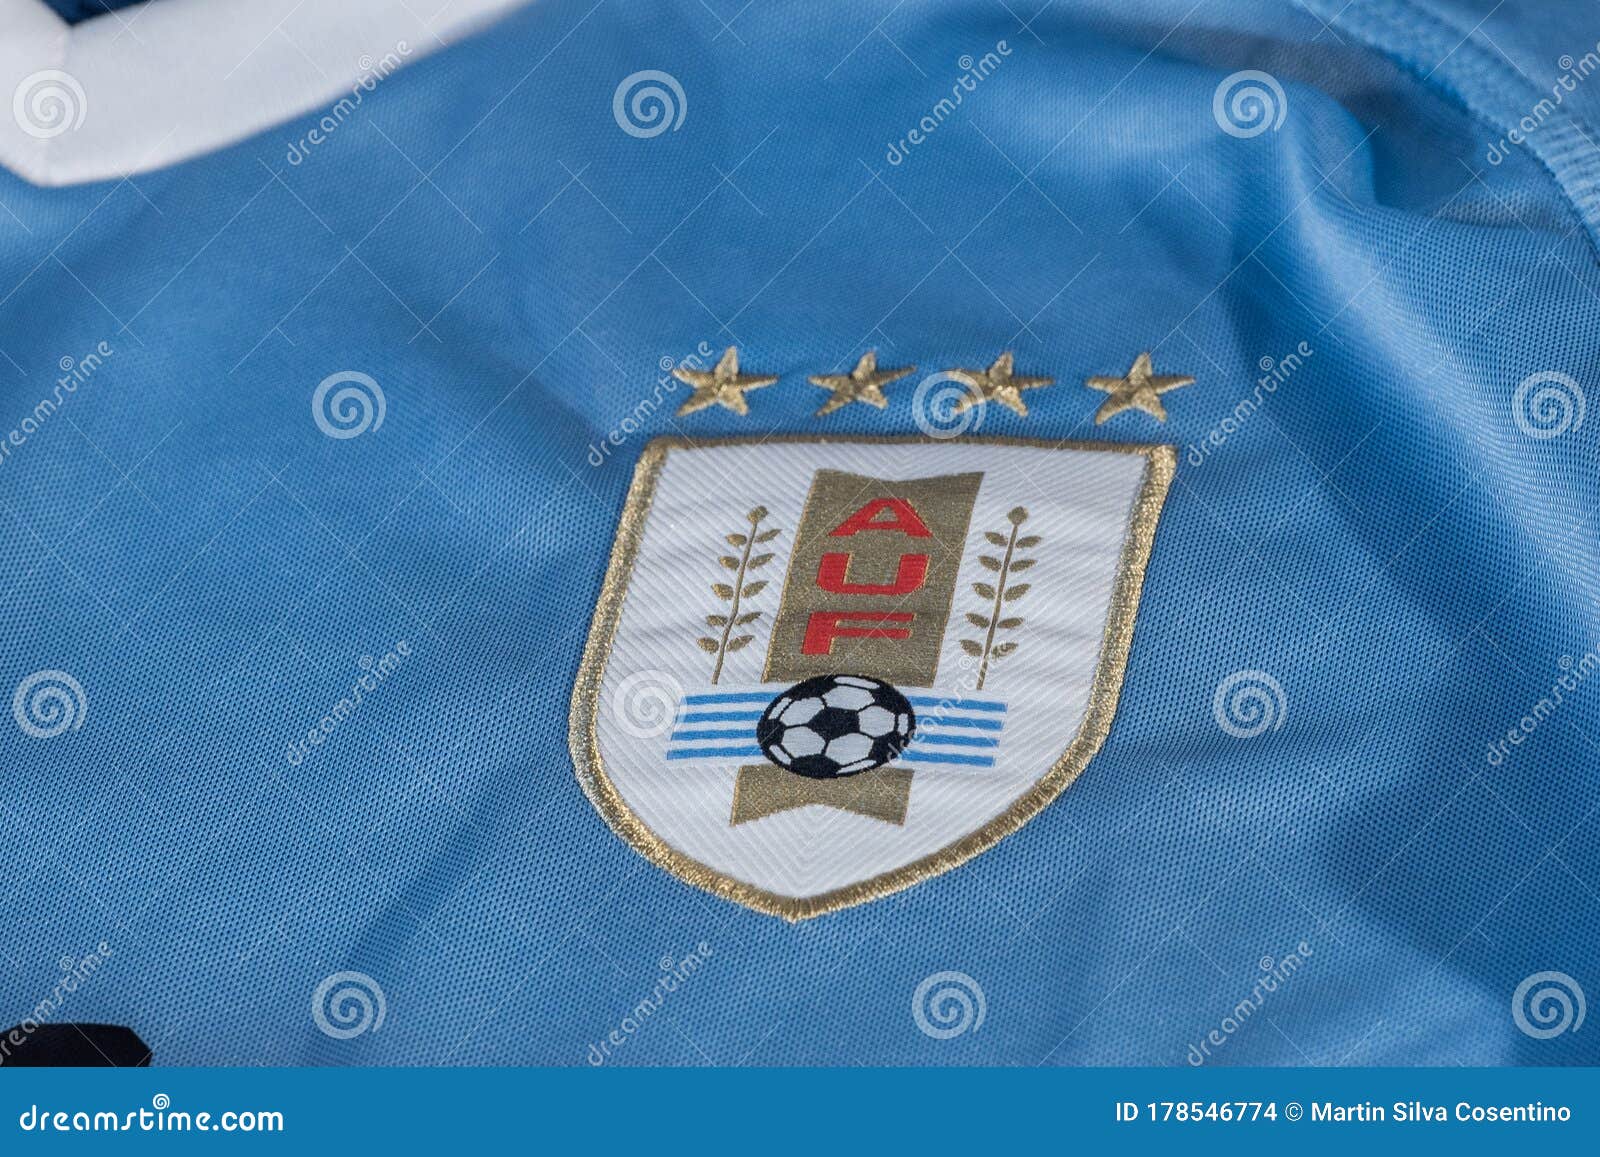 Uruguay - Asociación Uruguaya de Fútbol